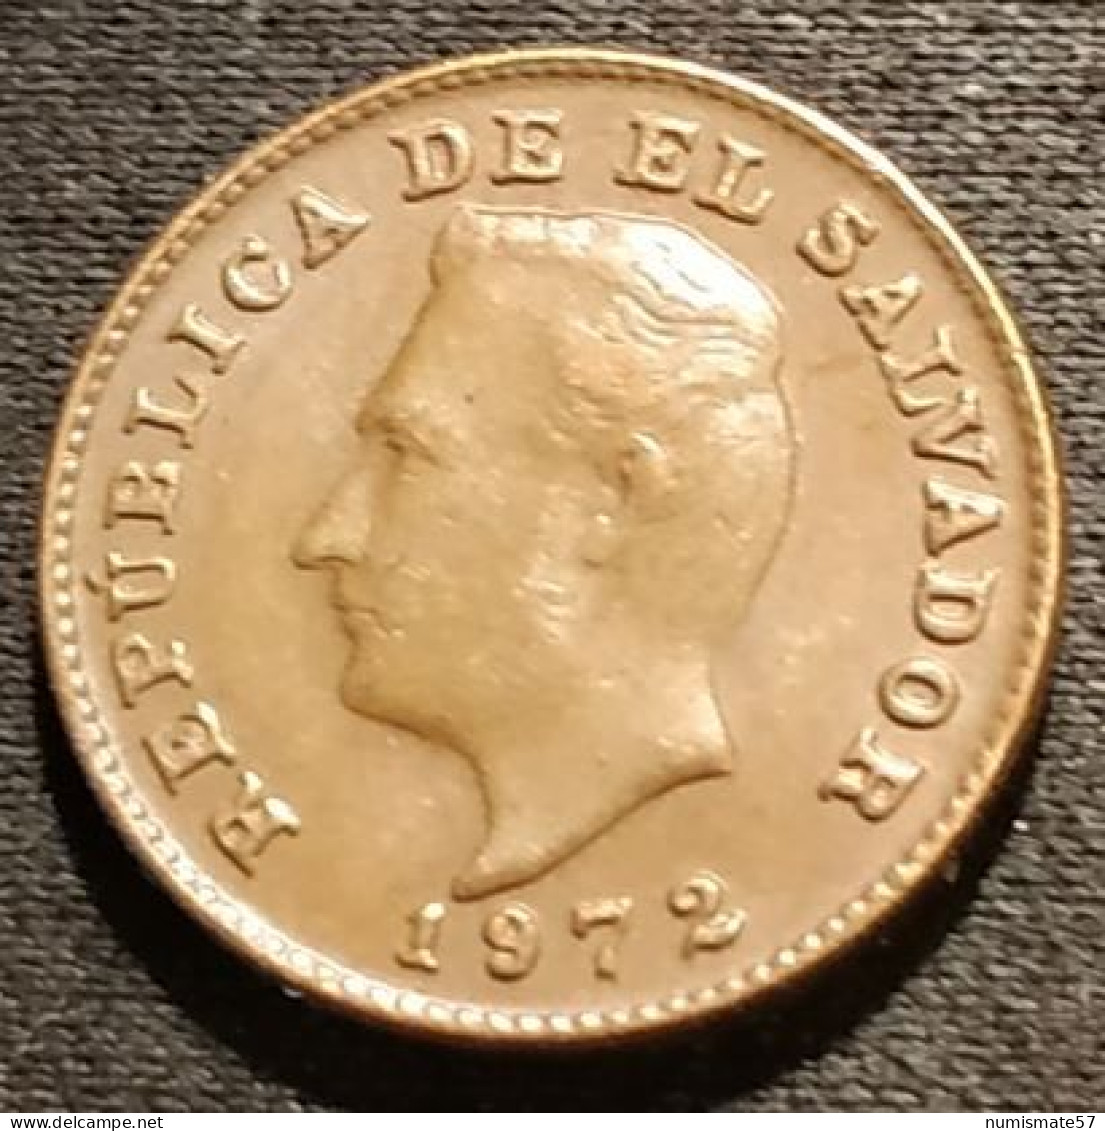 EL SALVADOR - 1 CENTAVO 1972 - KM 135.1 - Salvador